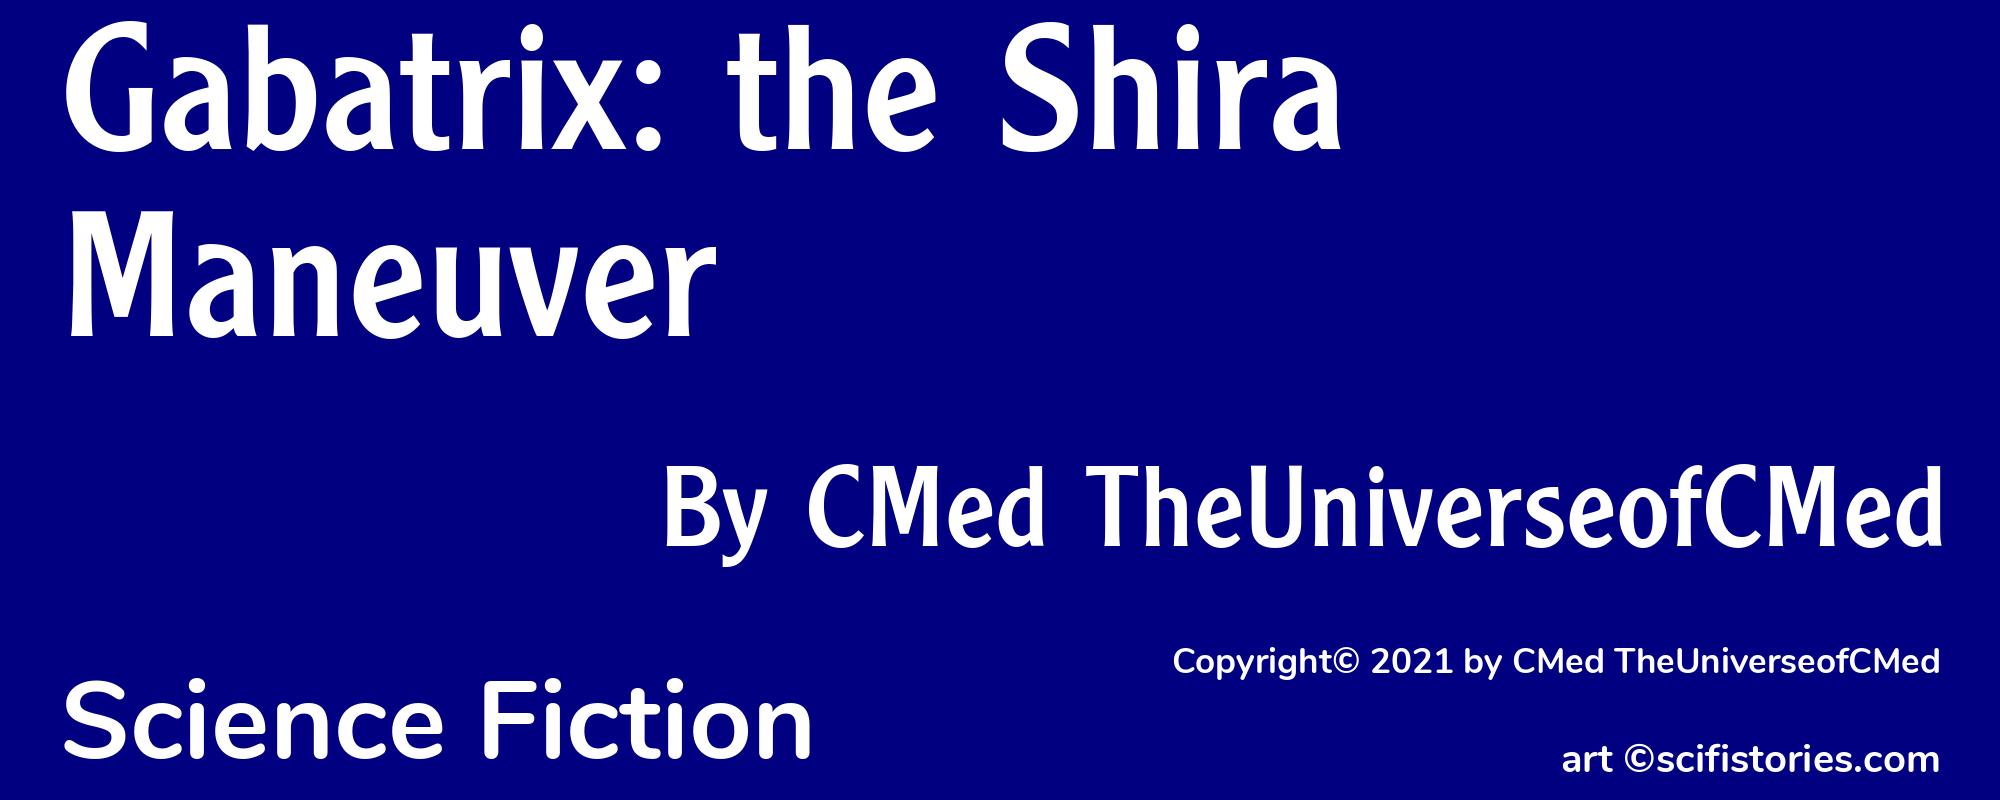 Gabatrix: the Shira Maneuver - Cover